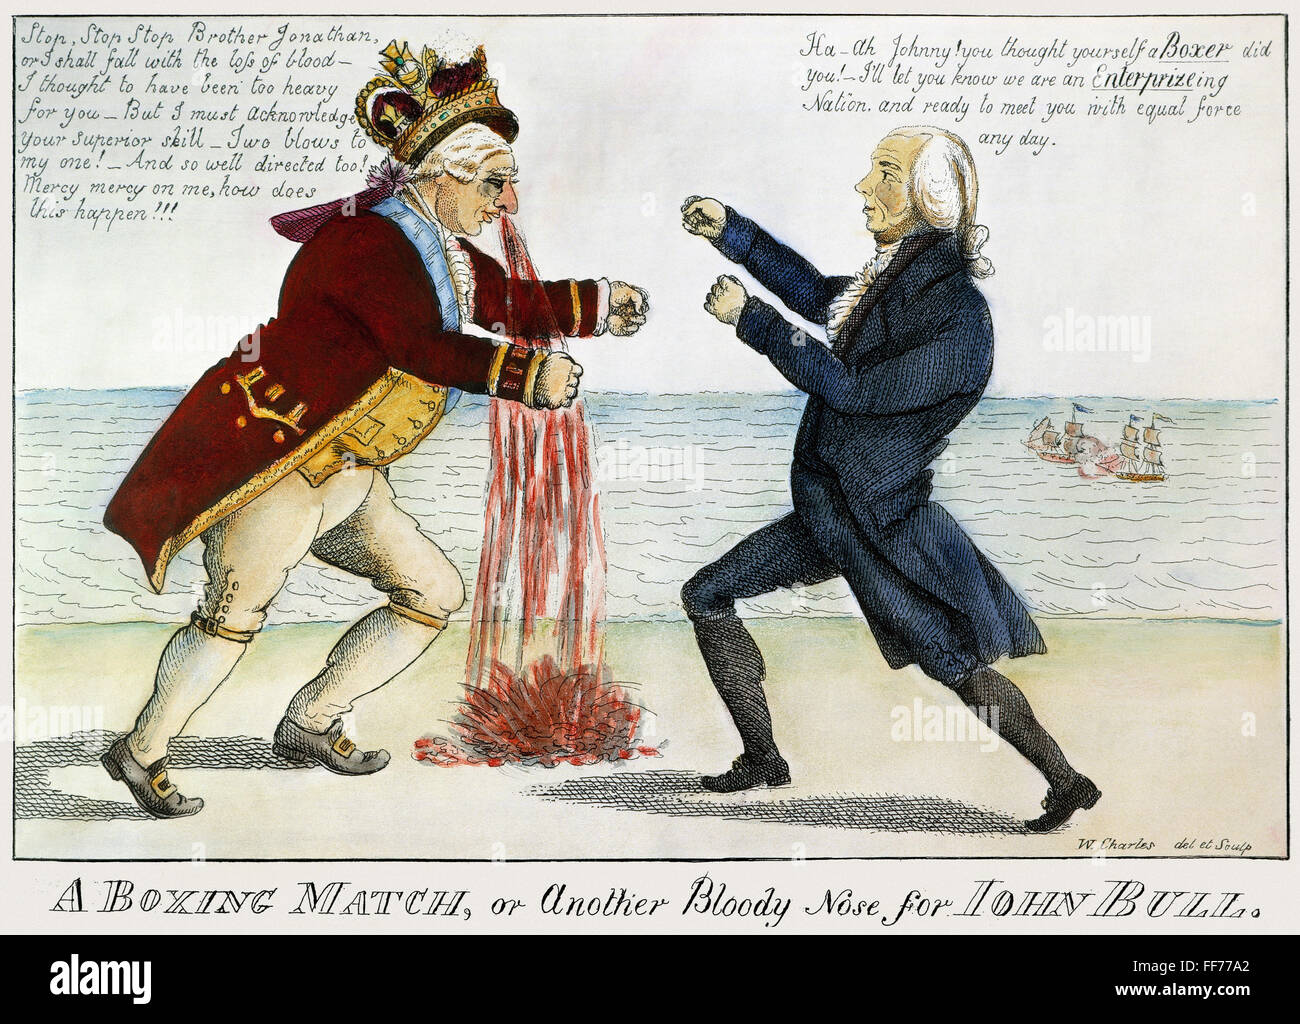 Guerra de 1812: Cartoon, 1813. /NA de Boxeo, u otra nariz sangrienta para John Bol. Una caricatura americana contemporánea grabado en la victoria de la USS Enterprise a través de HMS boxeador en la participación naval librada en 5 de septiembre de 1813. Foto de stock